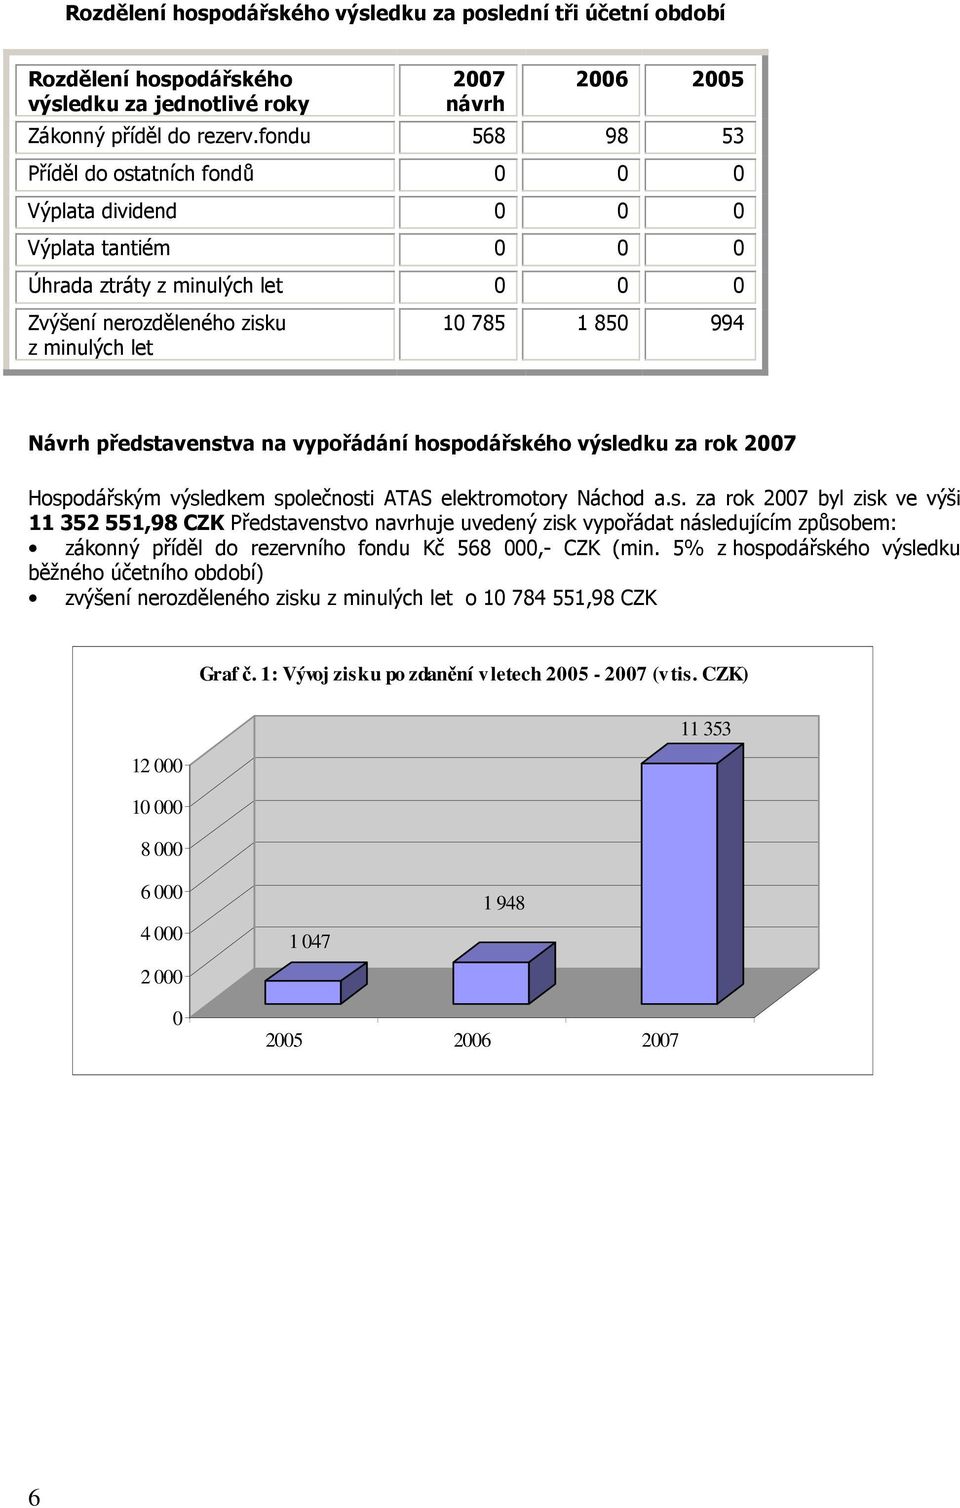 představenstva na vypořádání hospodářského výsledku za rok 2007 Hospodářským výsledkem společnosti ATAS elektromotory Náchod a.s. za rok 2007 byl zisk ve výši 11 352 551,98 CZK Představenstvo navrhuje uvedený zisk vypořádat následujícím způsobem: zákonný příděl do rezervního fondu Kč 568 000,- CZK (min.